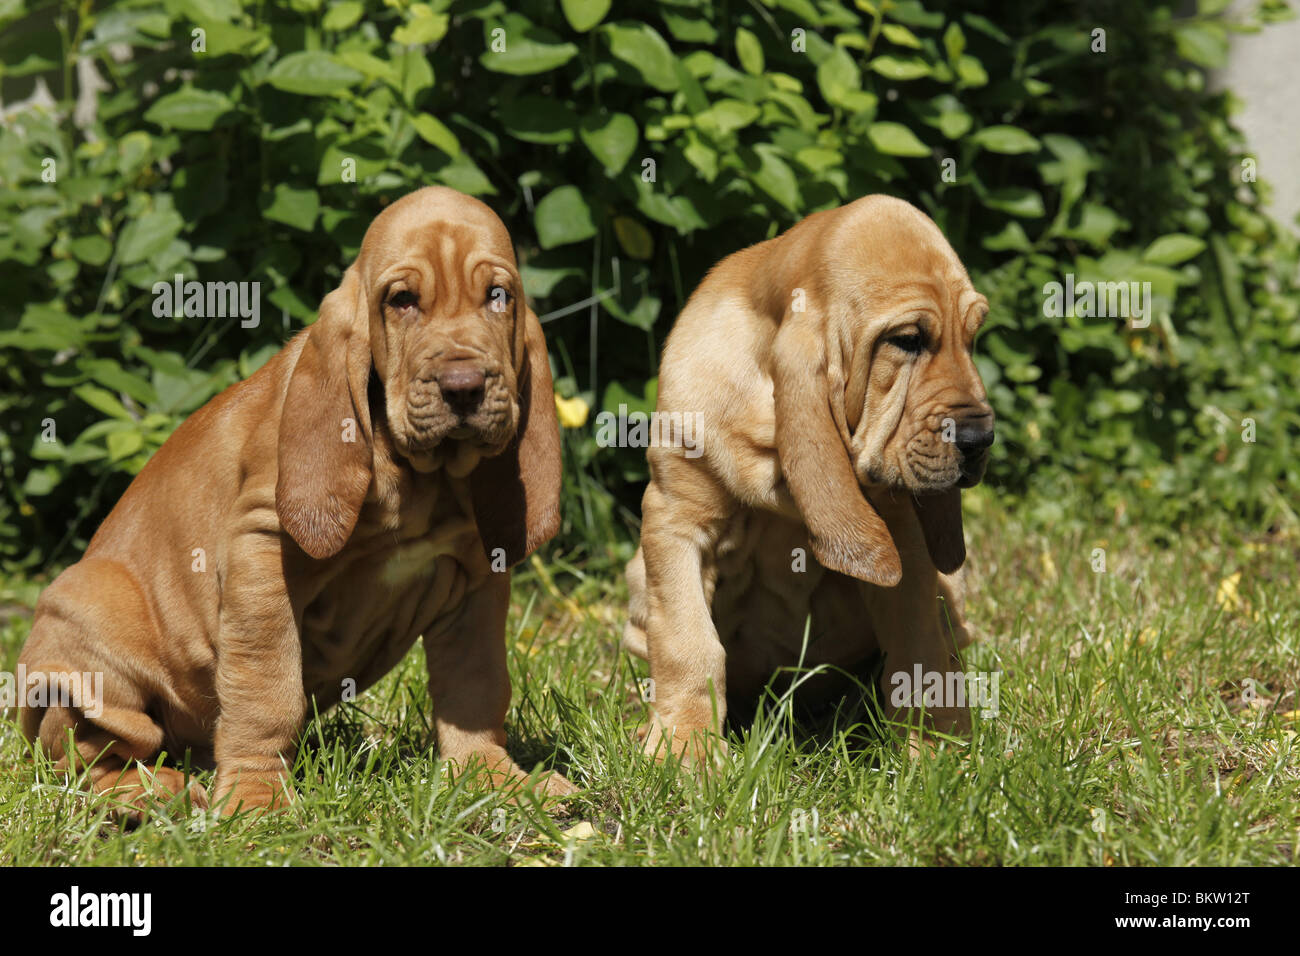 sitzender Bluthund Welpe / sitting Bloodhound Puppy Stock Photo